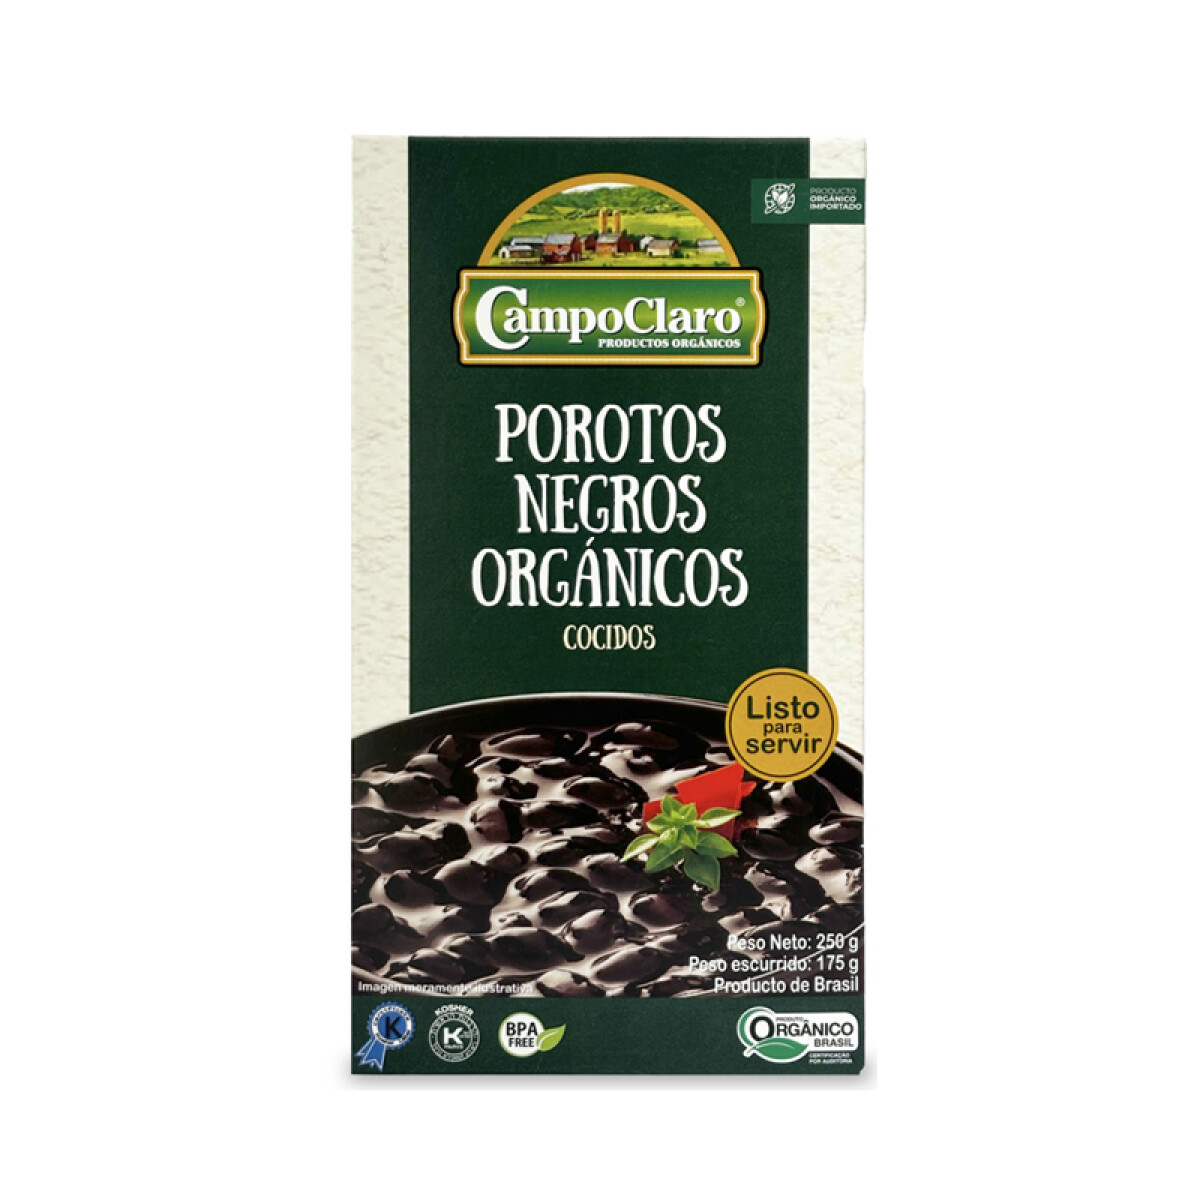 Porotos negros cocidos organicos 250g Campo Claro 